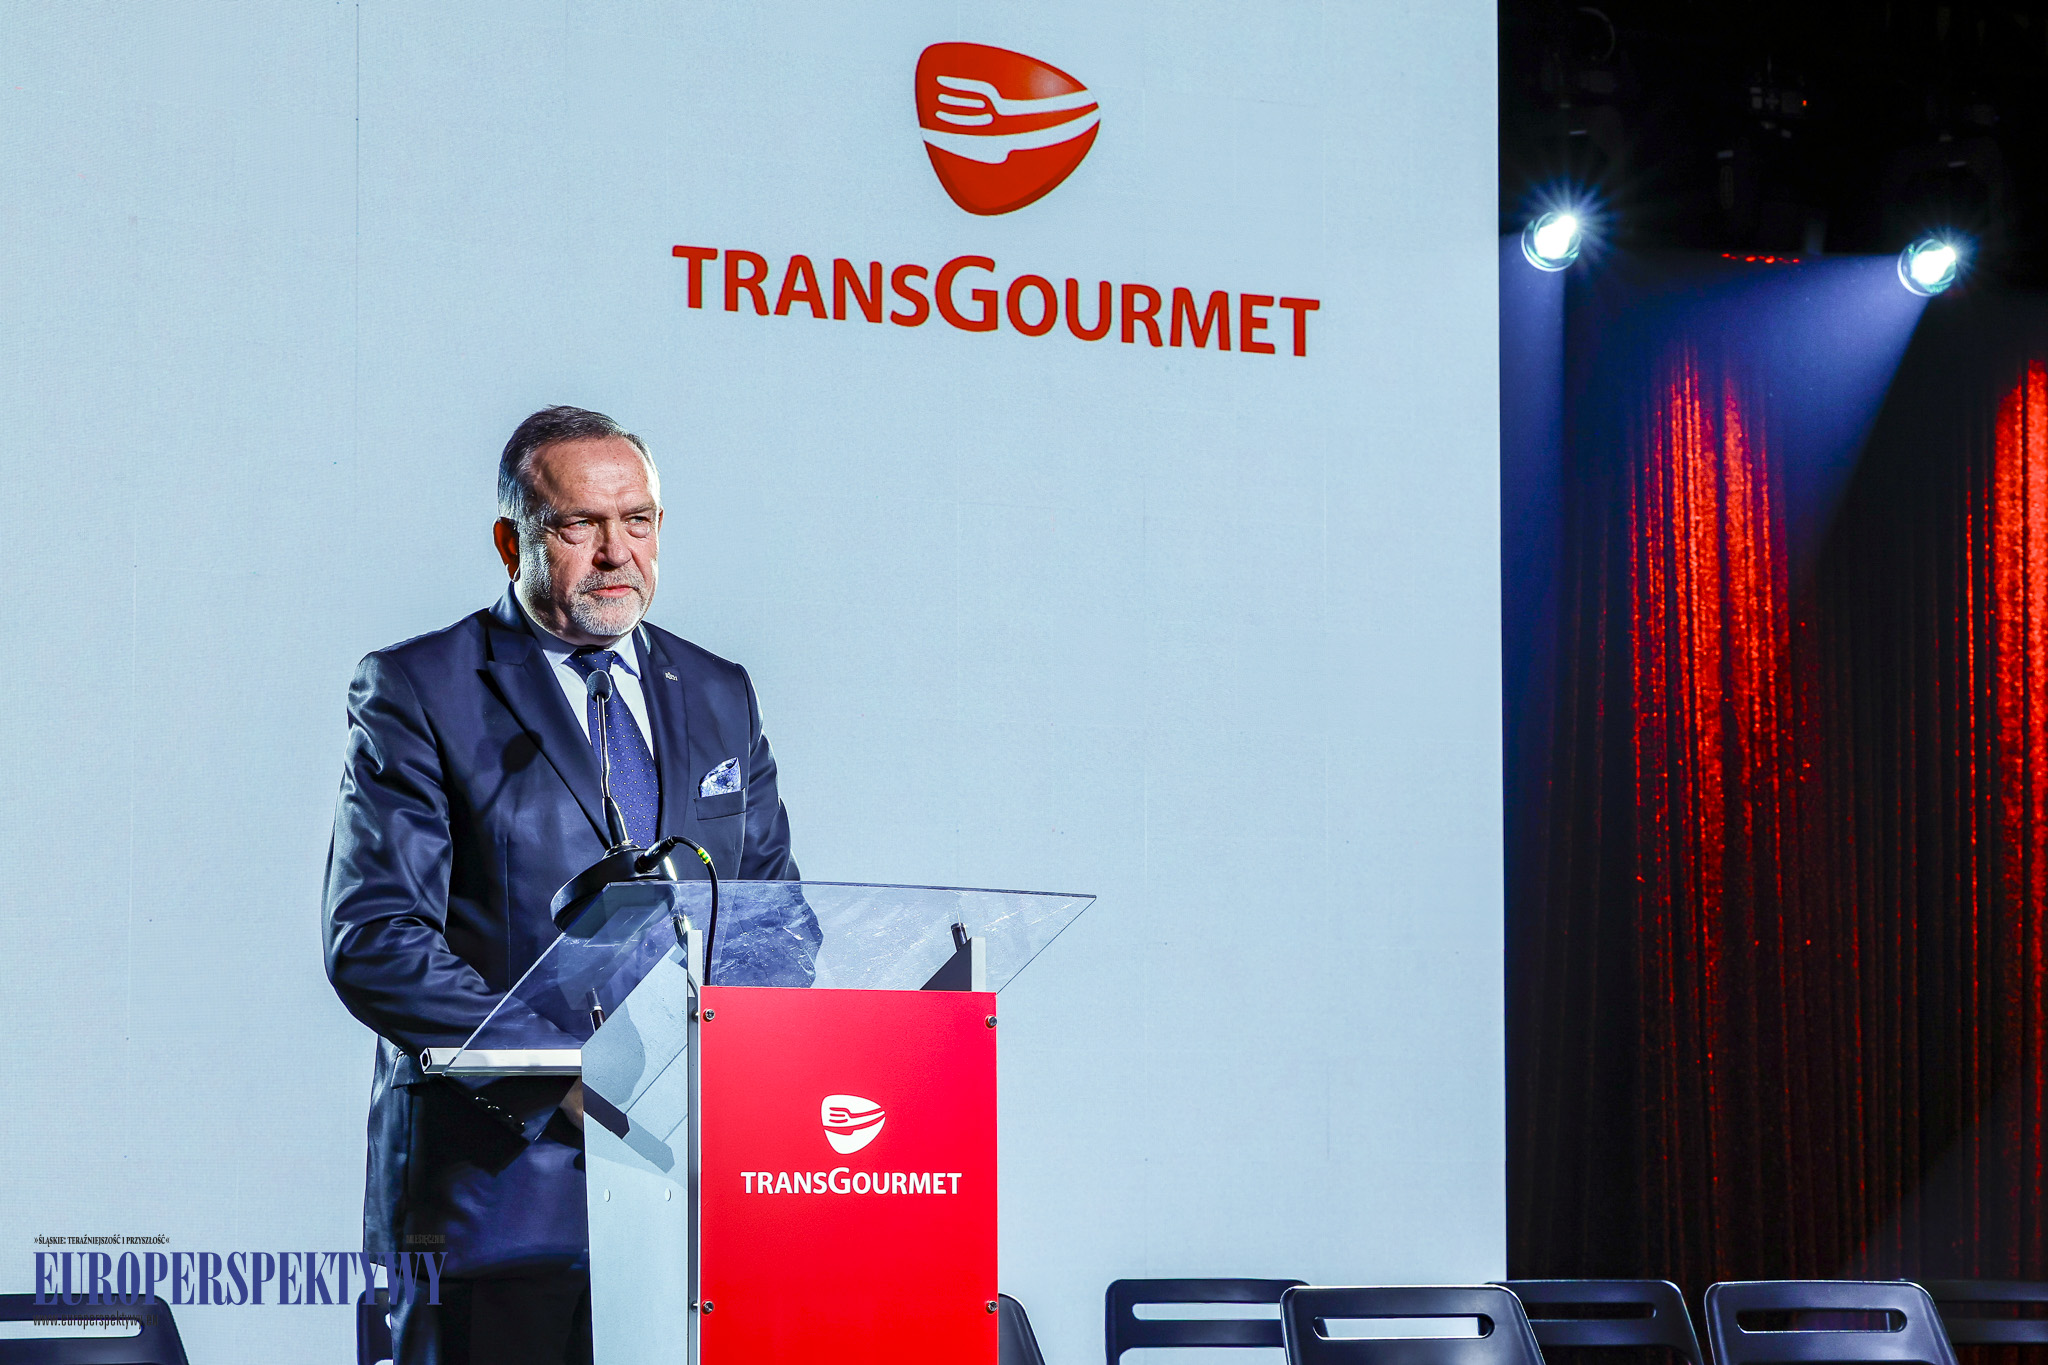 Europerspektywy Otwarcie Transgourmet Foodservice w Gliwicach